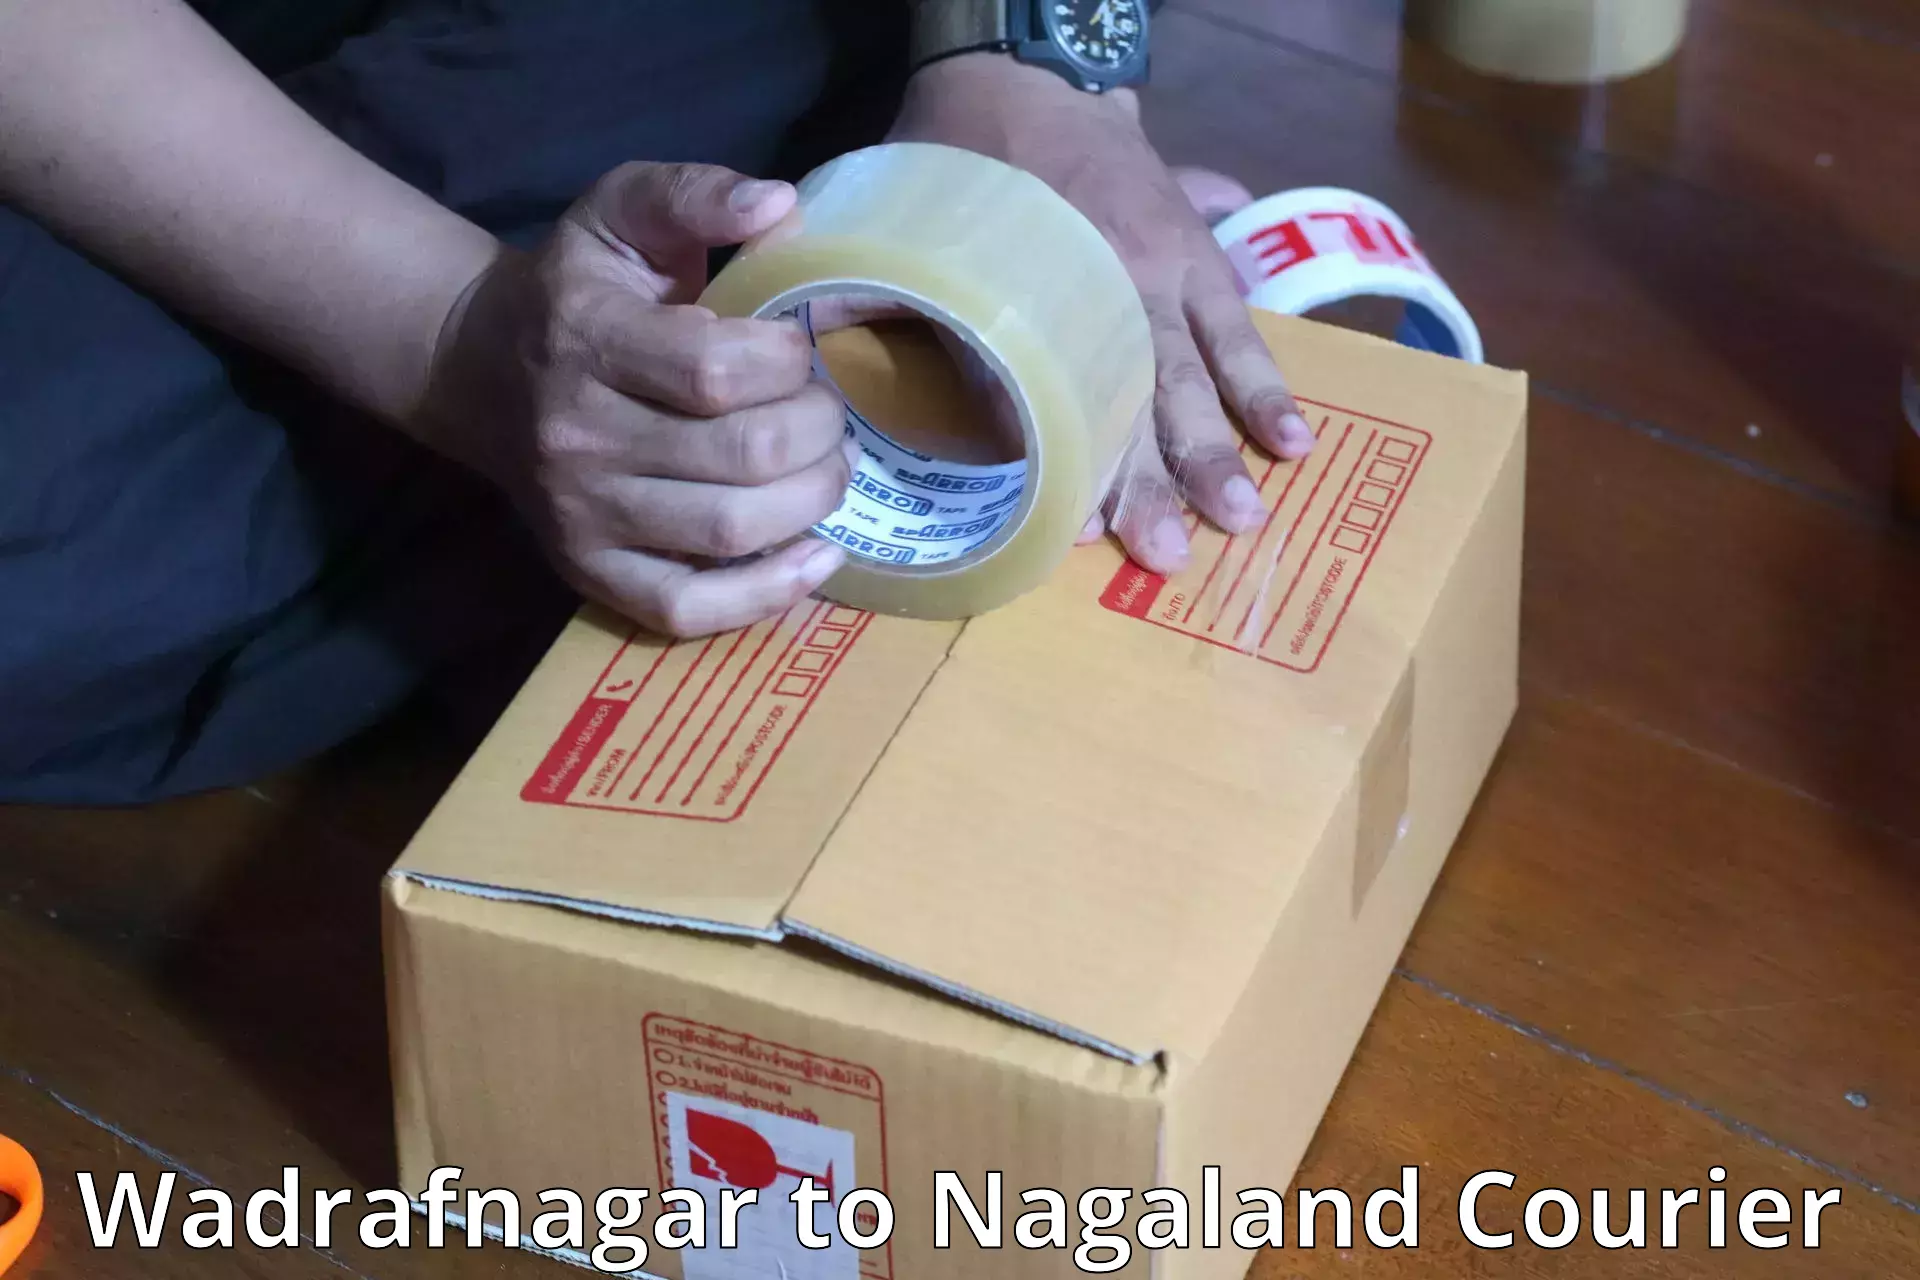 Baggage delivery technology Wadrafnagar to Longleng